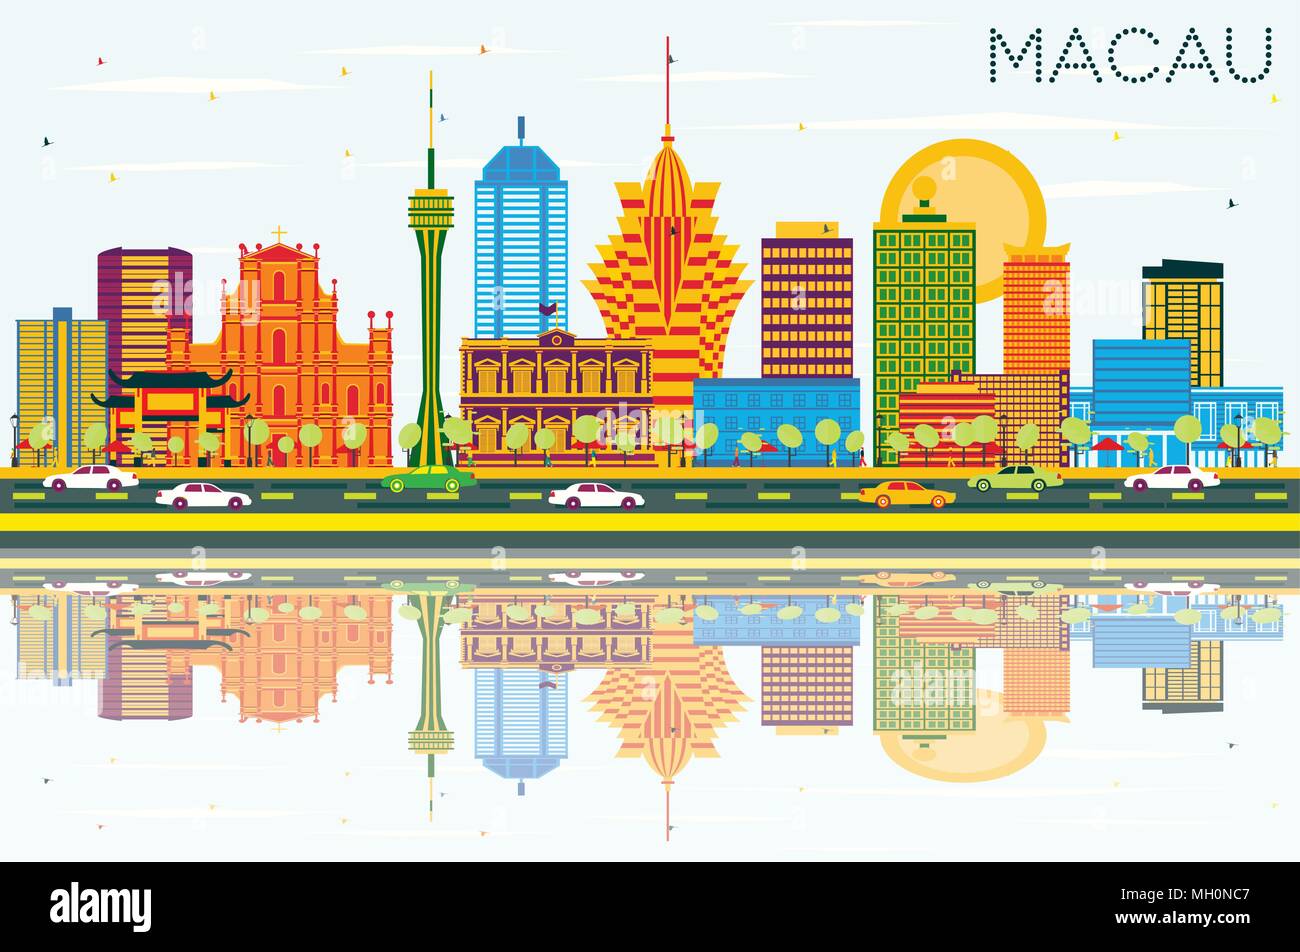 La Chine Macao Ville avec des bâtiments, de couleur bleu ciel et les réflexions. Vector Illustration. Les voyages d'affaires et tourisme Concept Illustration de Vecteur